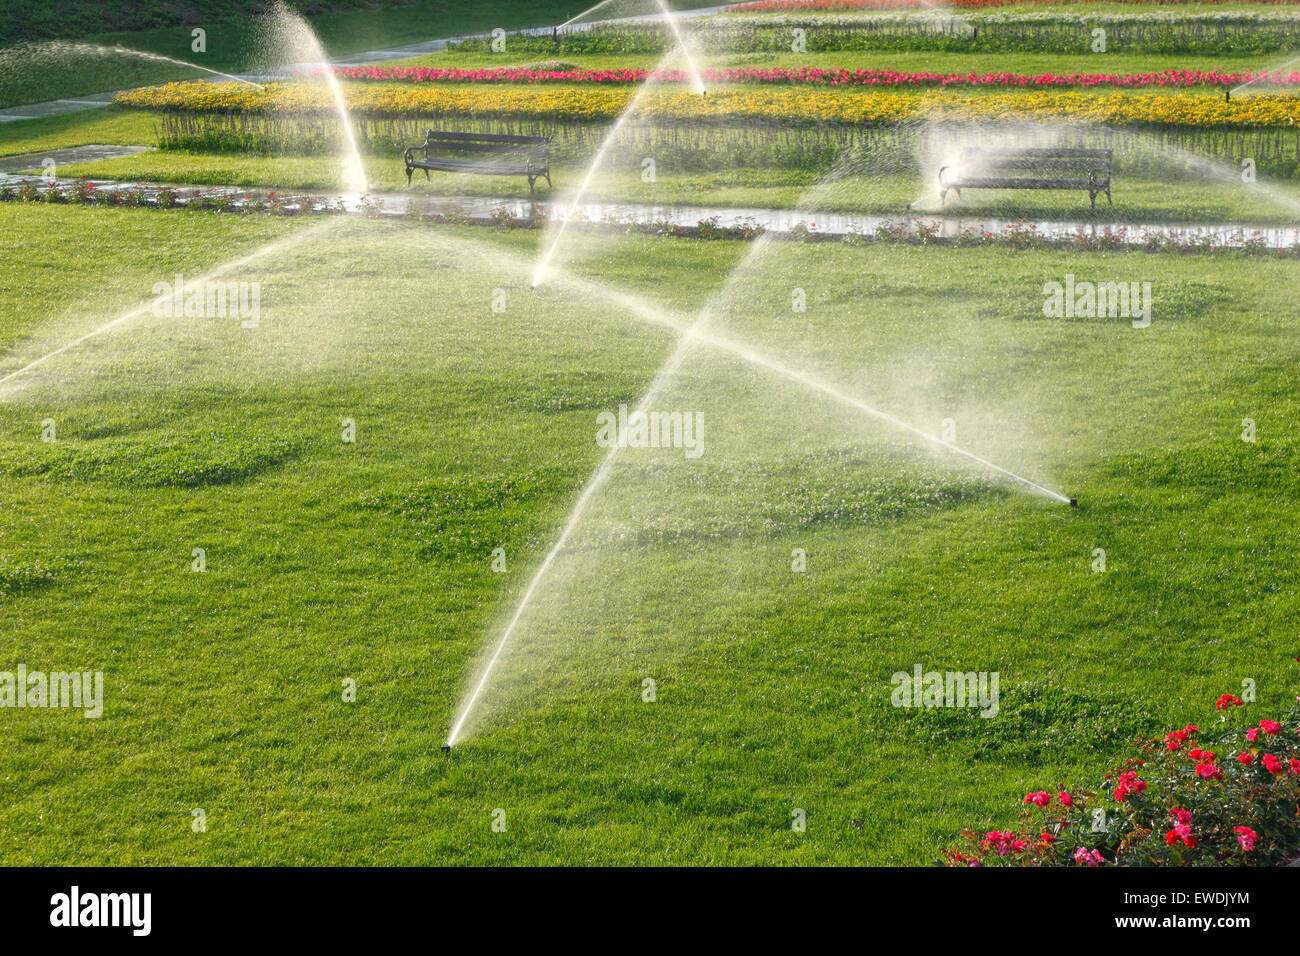 Automatische Sprinkleranlage bewässern Rasen Stockfoto